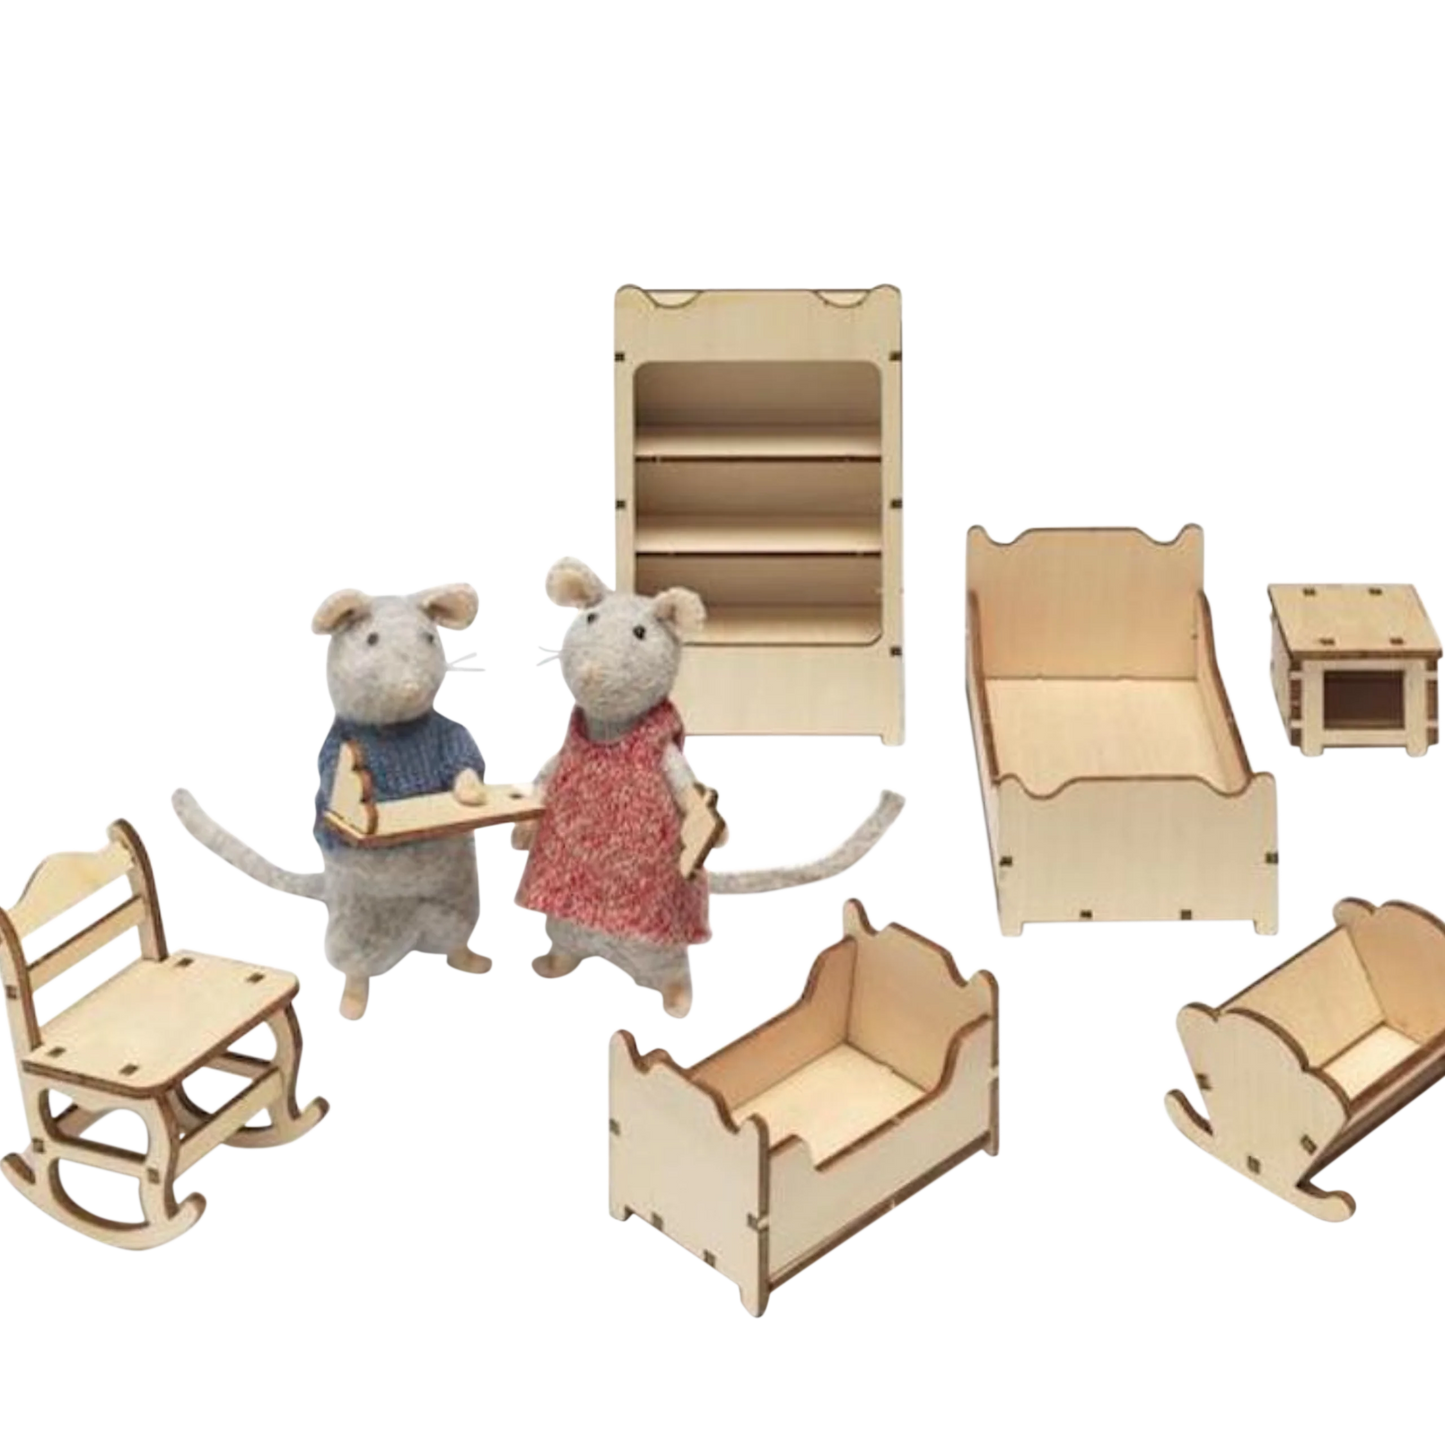 le kit de meubles maison de la souris pour bricolage chambre d'enfant - ensemble de meubles pour la chambre et canapé pour enfant pour assembleur